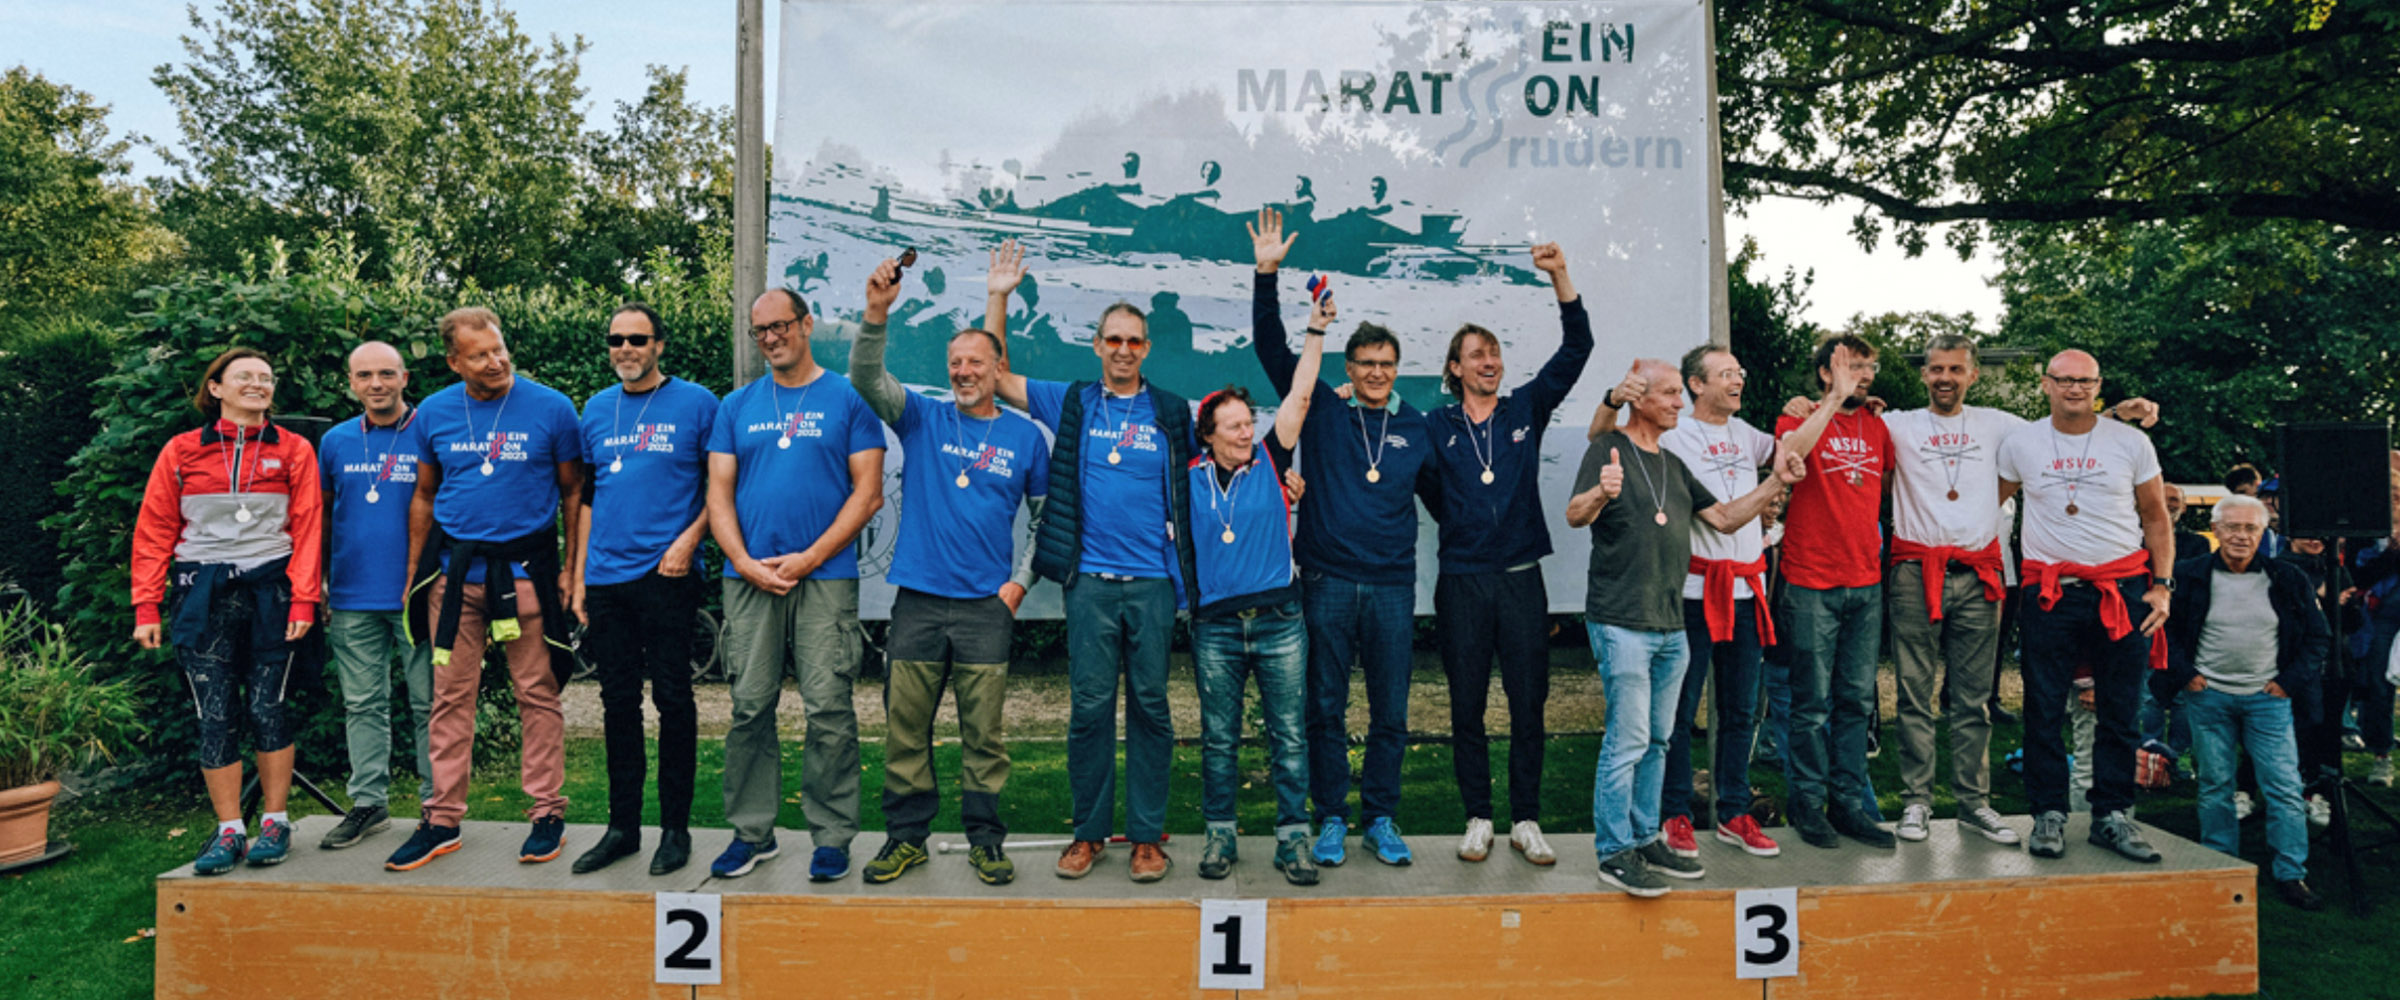 2. Platz für Rhenus-Mitglieder beim Rheinmarathon-Regatta